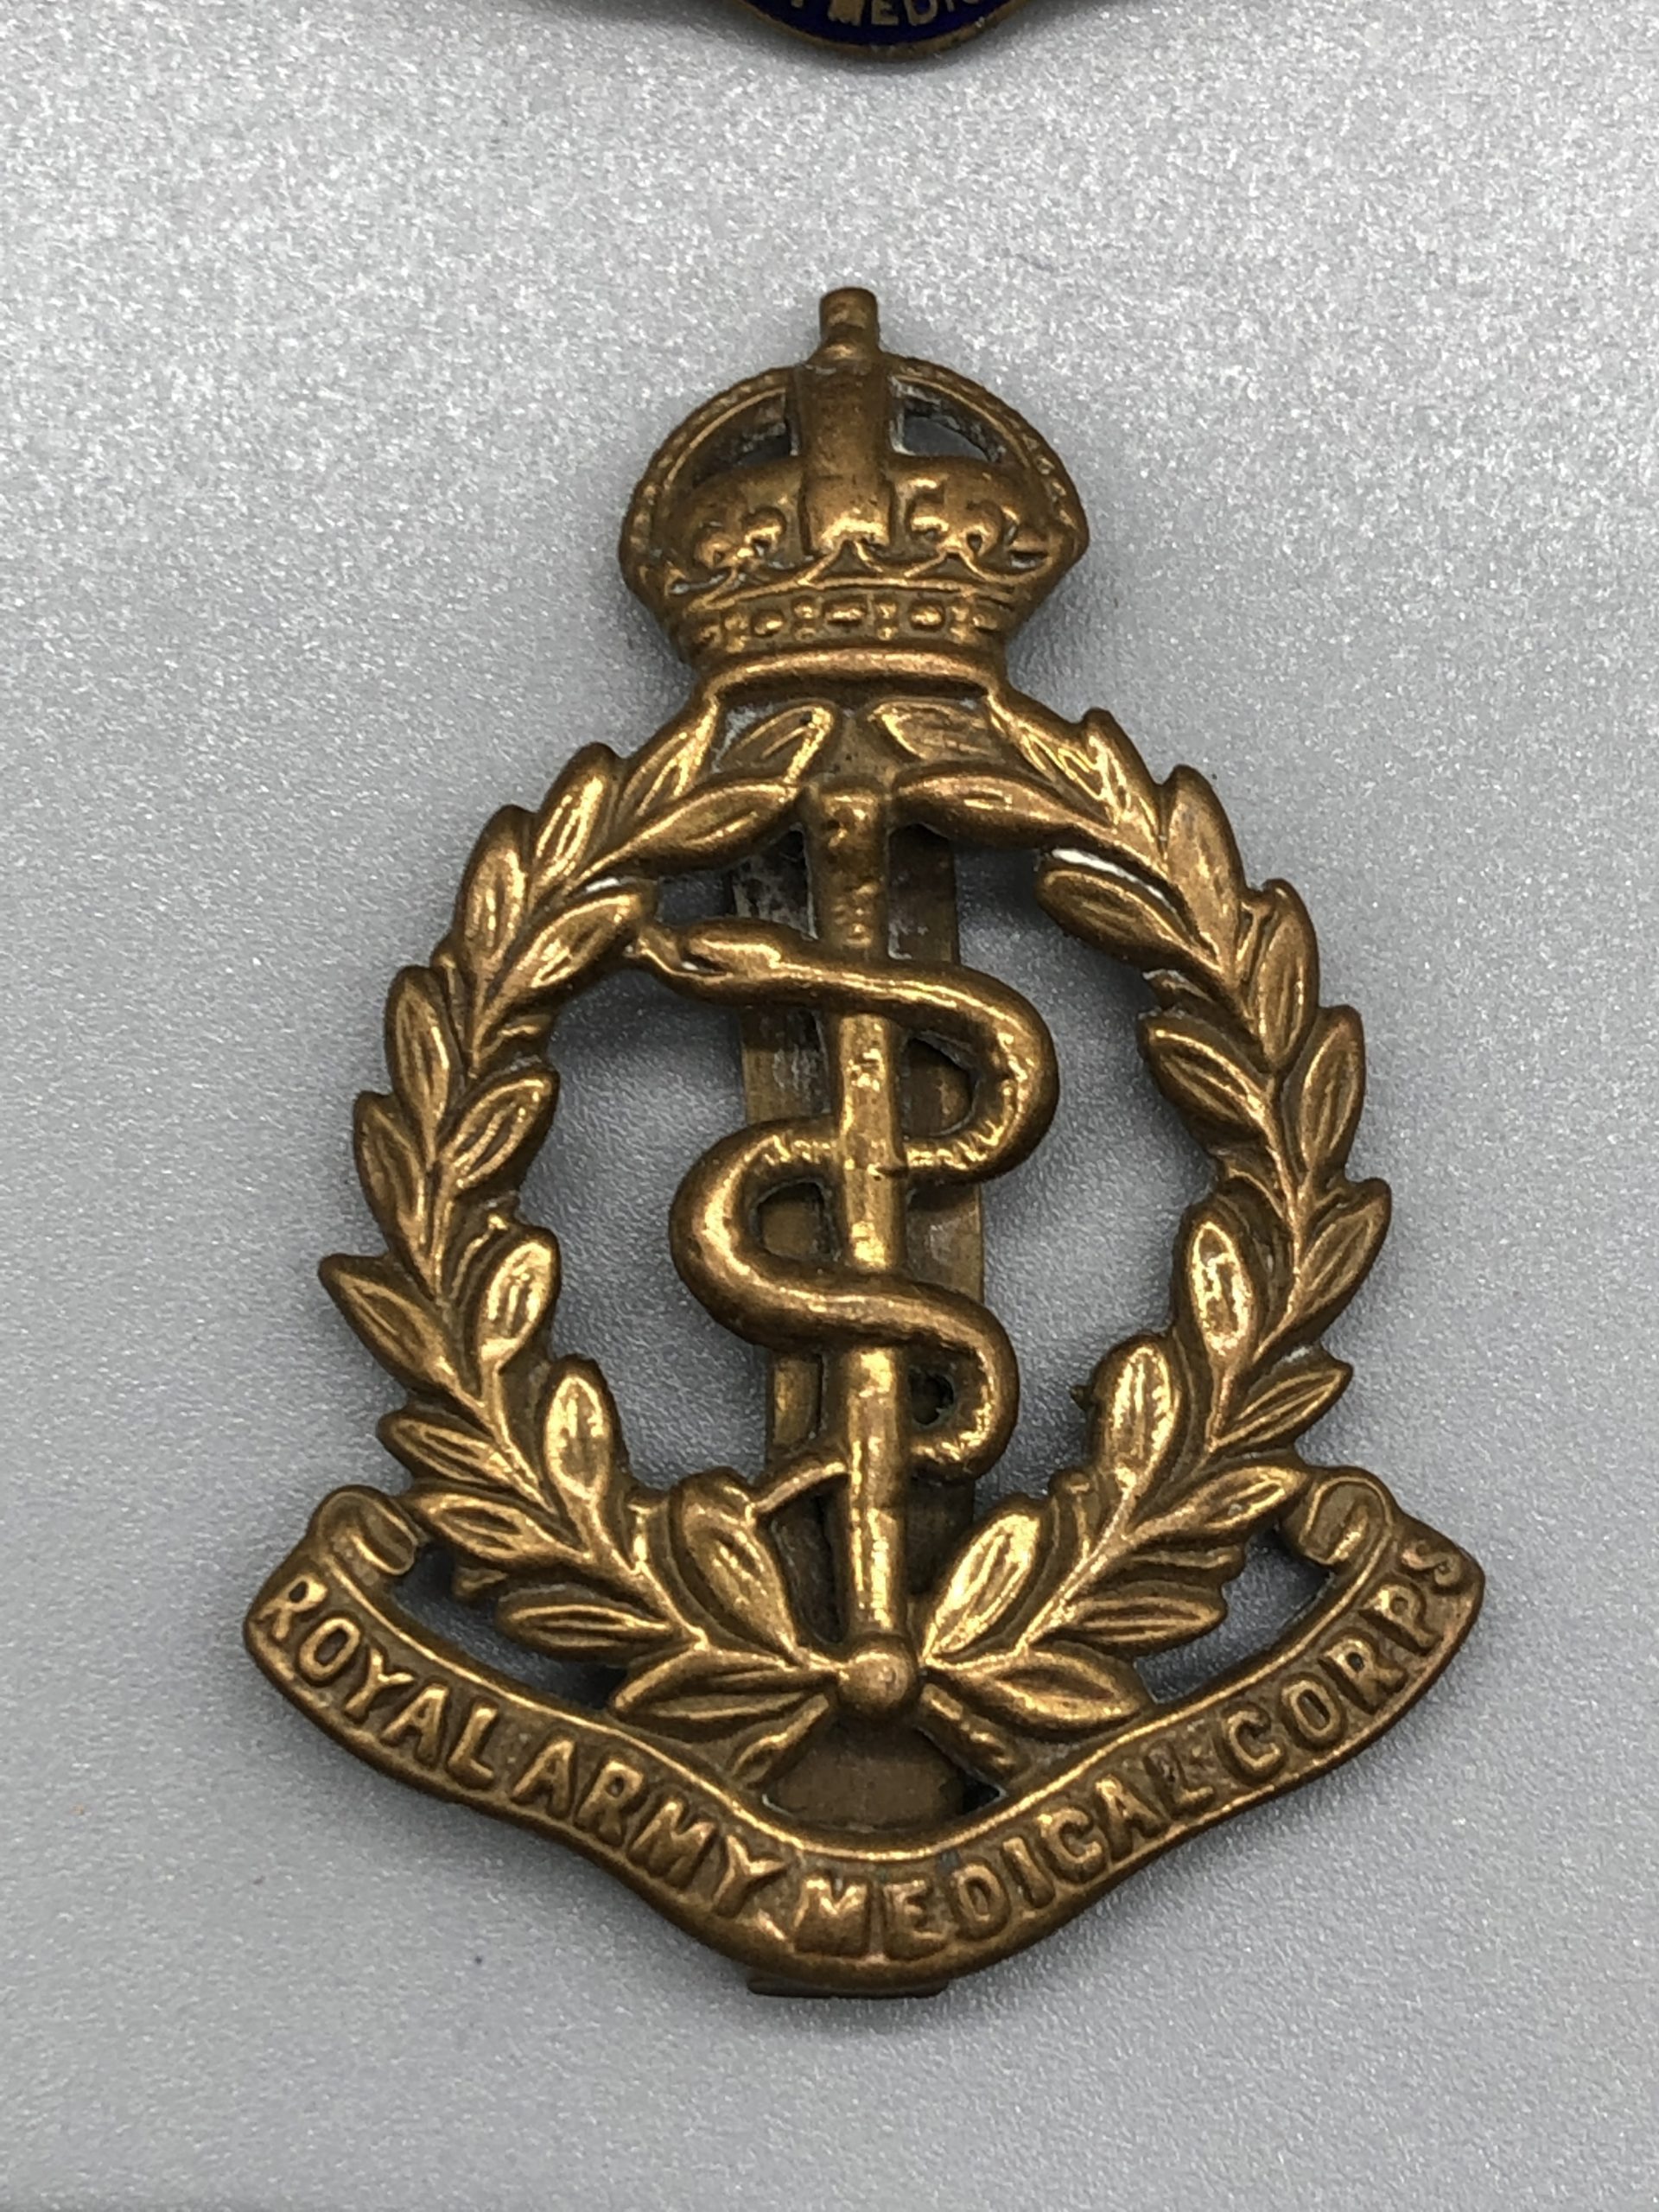 GB UK Barettabzeichen Medical Corps bunt auf blau bunt auf dunkelblau